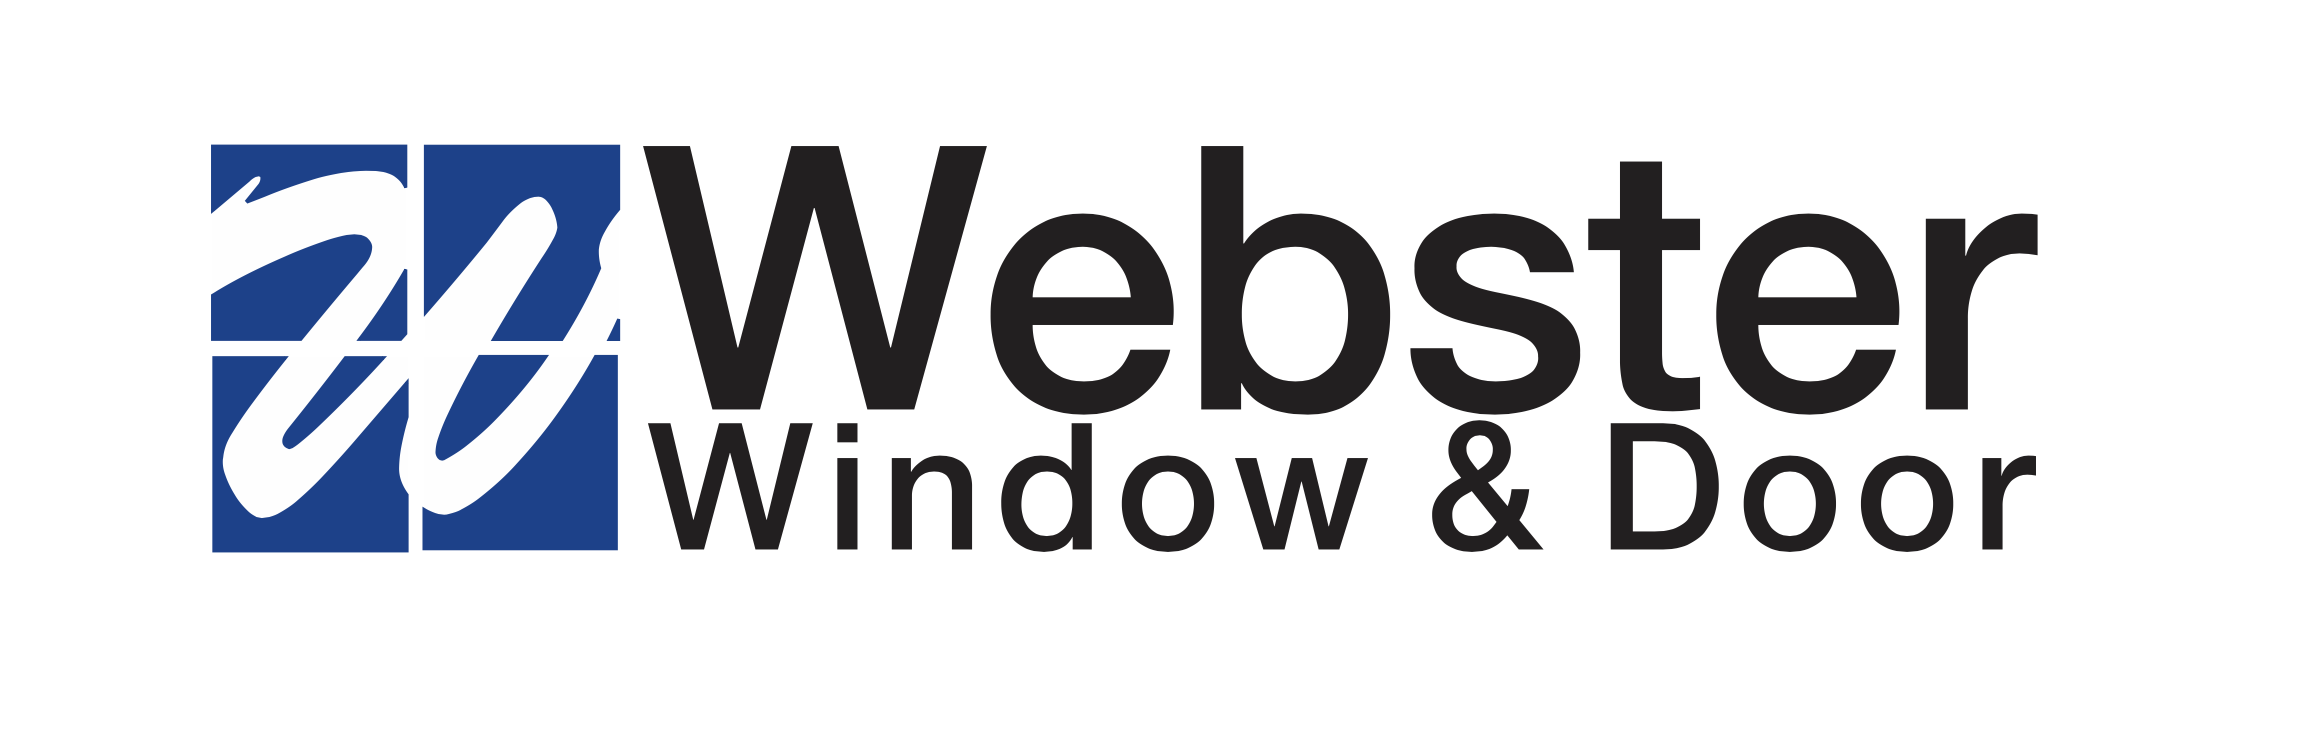 Webster Window and Door | Residential & Commercial Custom Windows and Doors